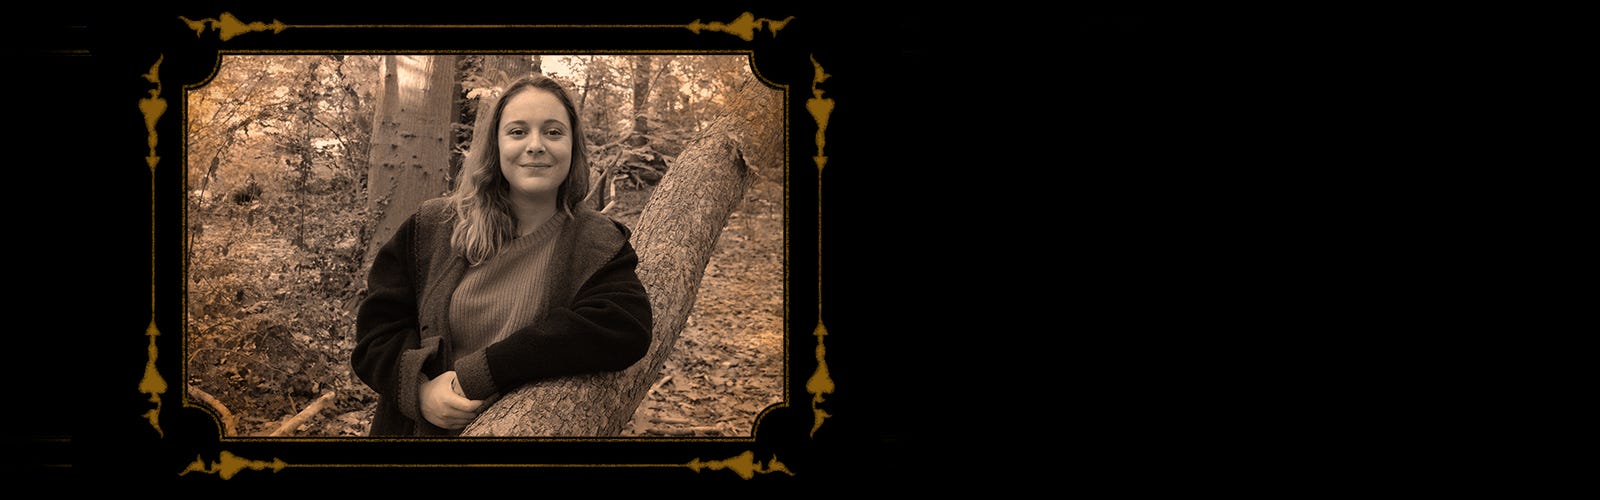 Szépia árnyalatú arckép egy fiatal nőről az erdőben